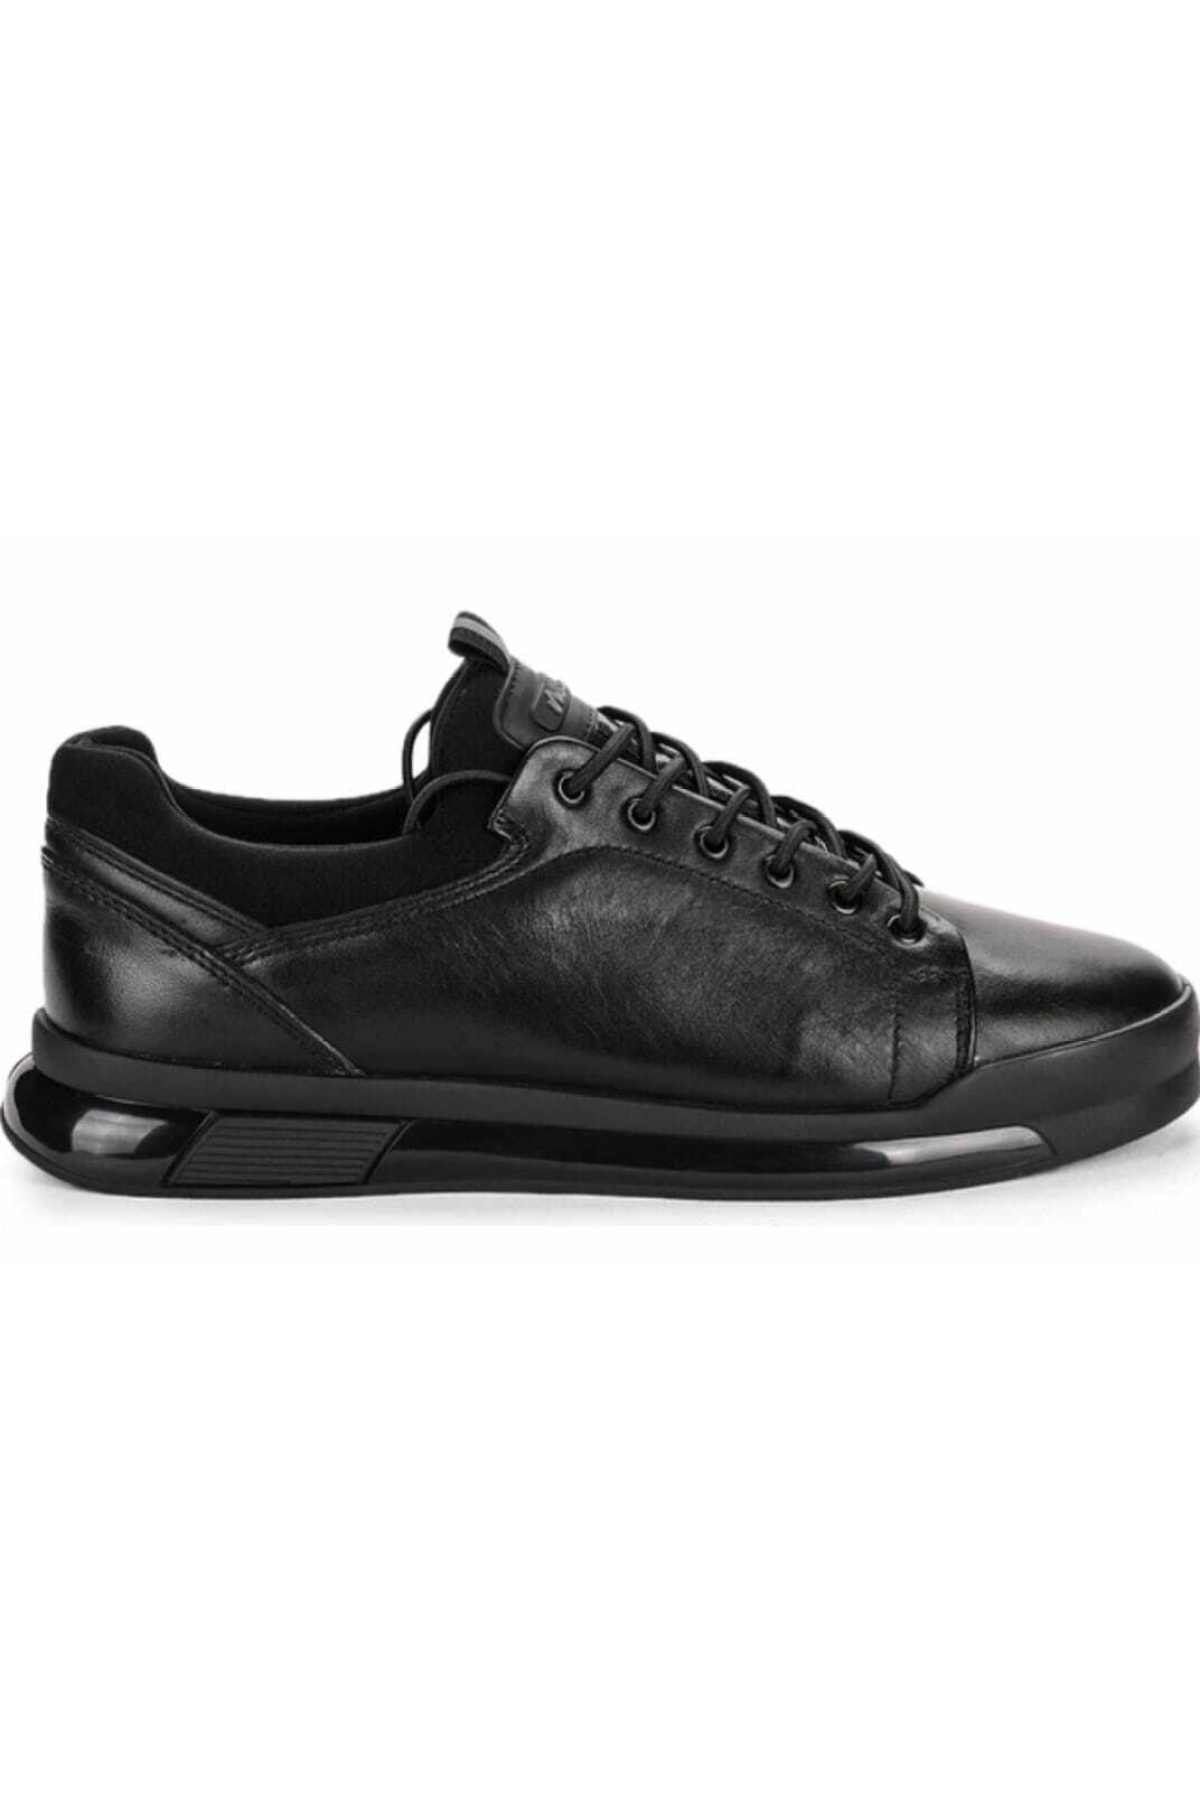 MARCOMEN 152-17374 Siyah Bağcıklı Günlük Erkek Casual Ayakkabı